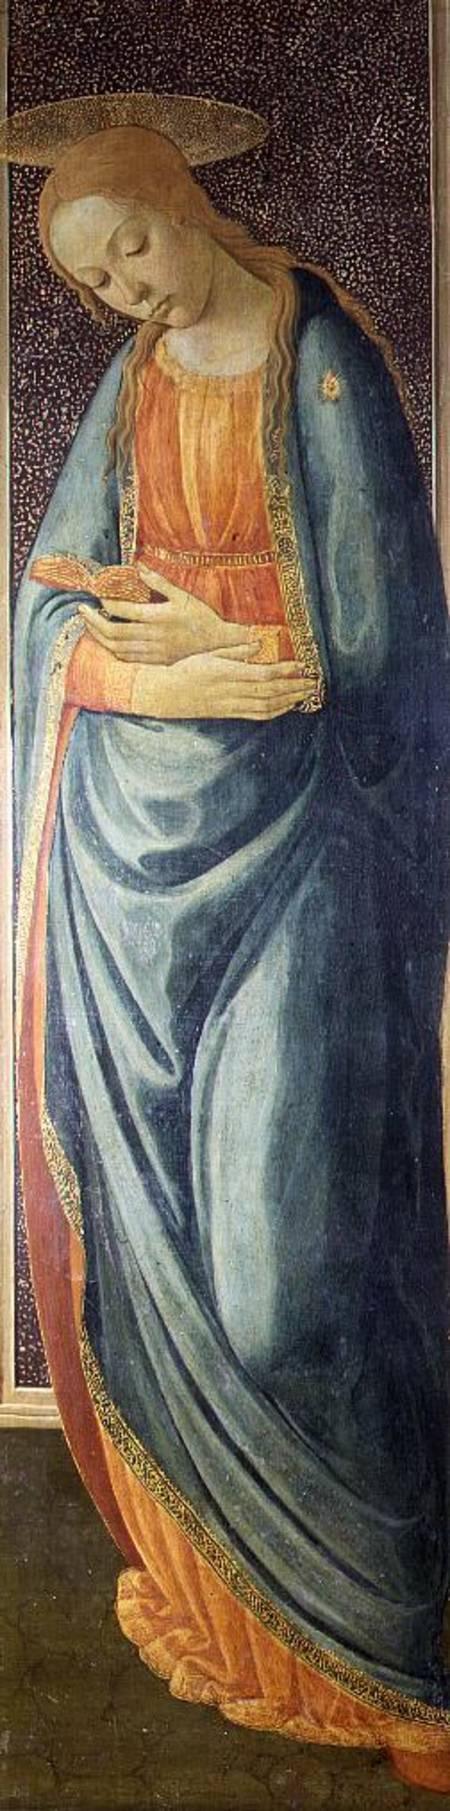 Virgin Mary à Jacopo del Sellaio